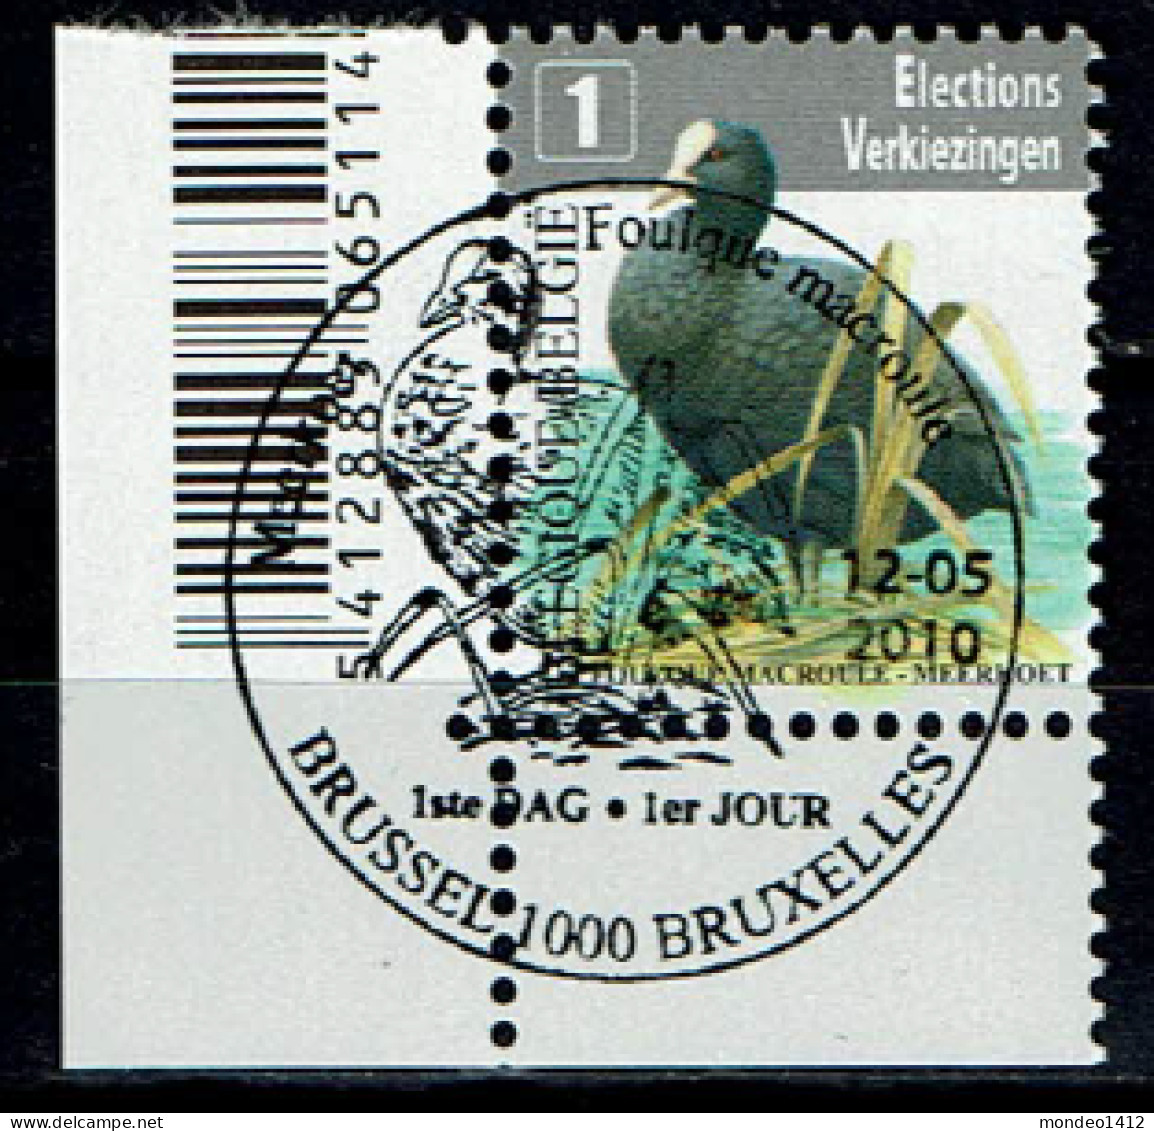 België OBP 4042 - Vogel Meerkoet, Foulque Macroule, Verkiezingszegel - Oblitérés